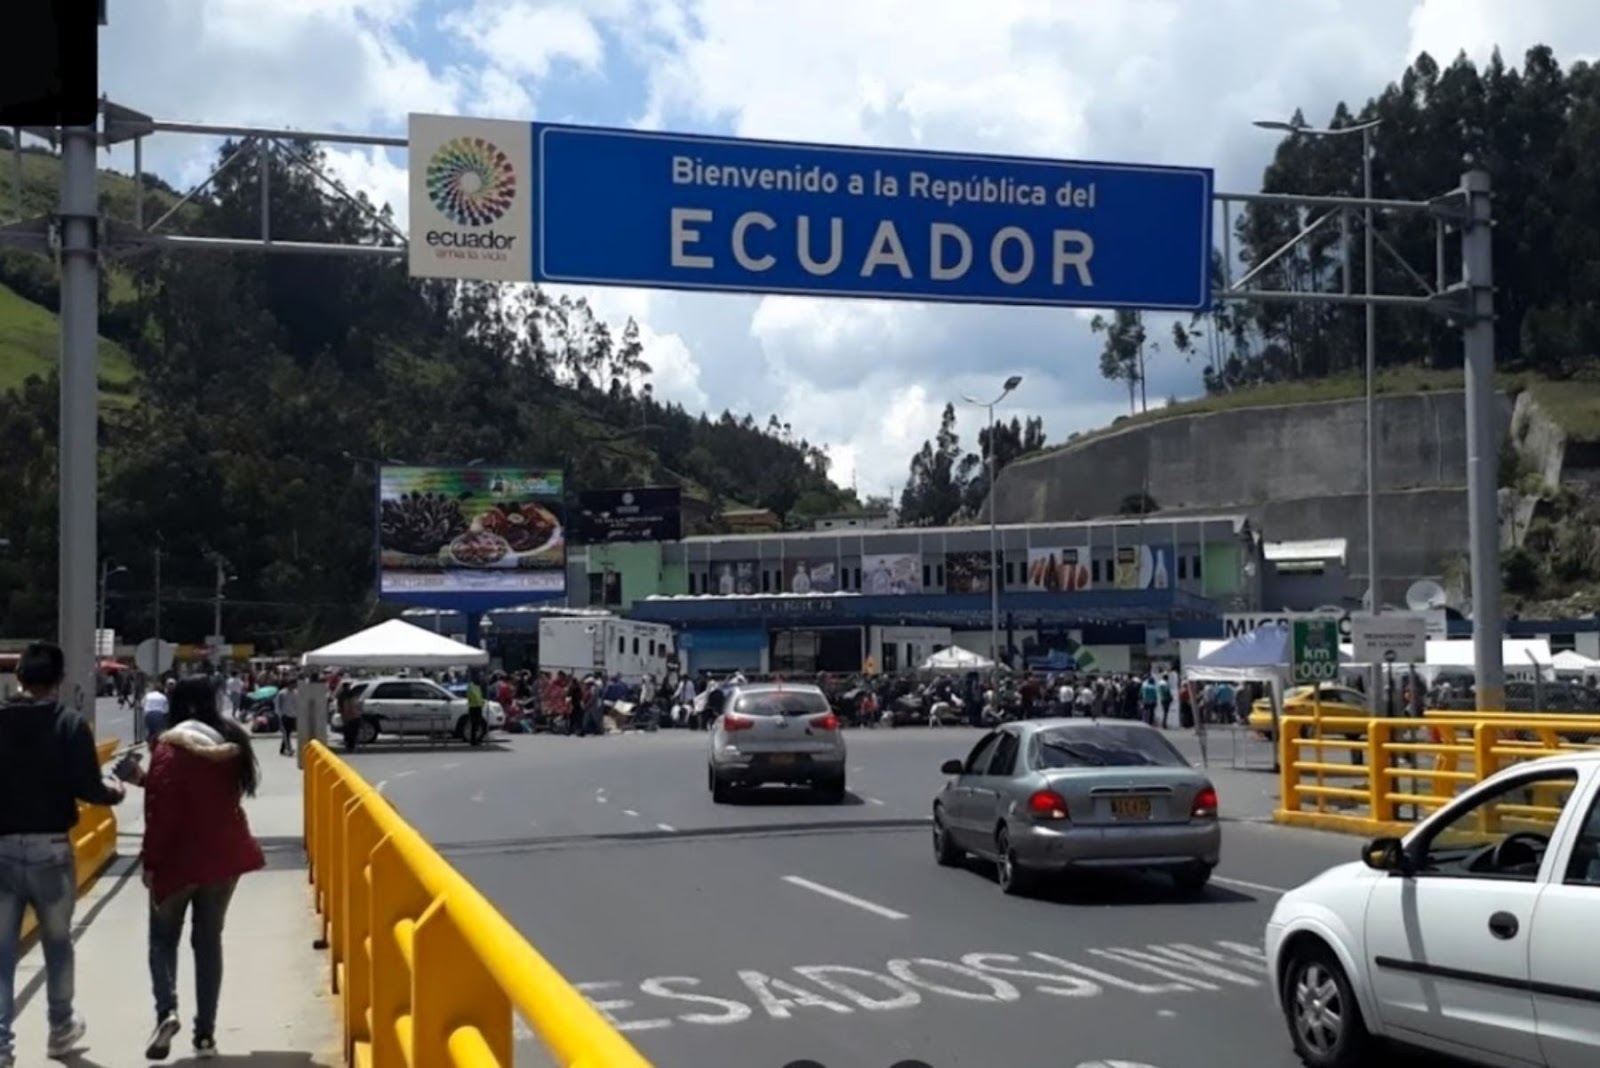 Puente internacional de Rumichaca, en la frontera colombo-ecuatoriana. Foto: Francisco J. Flores / Google Maps.